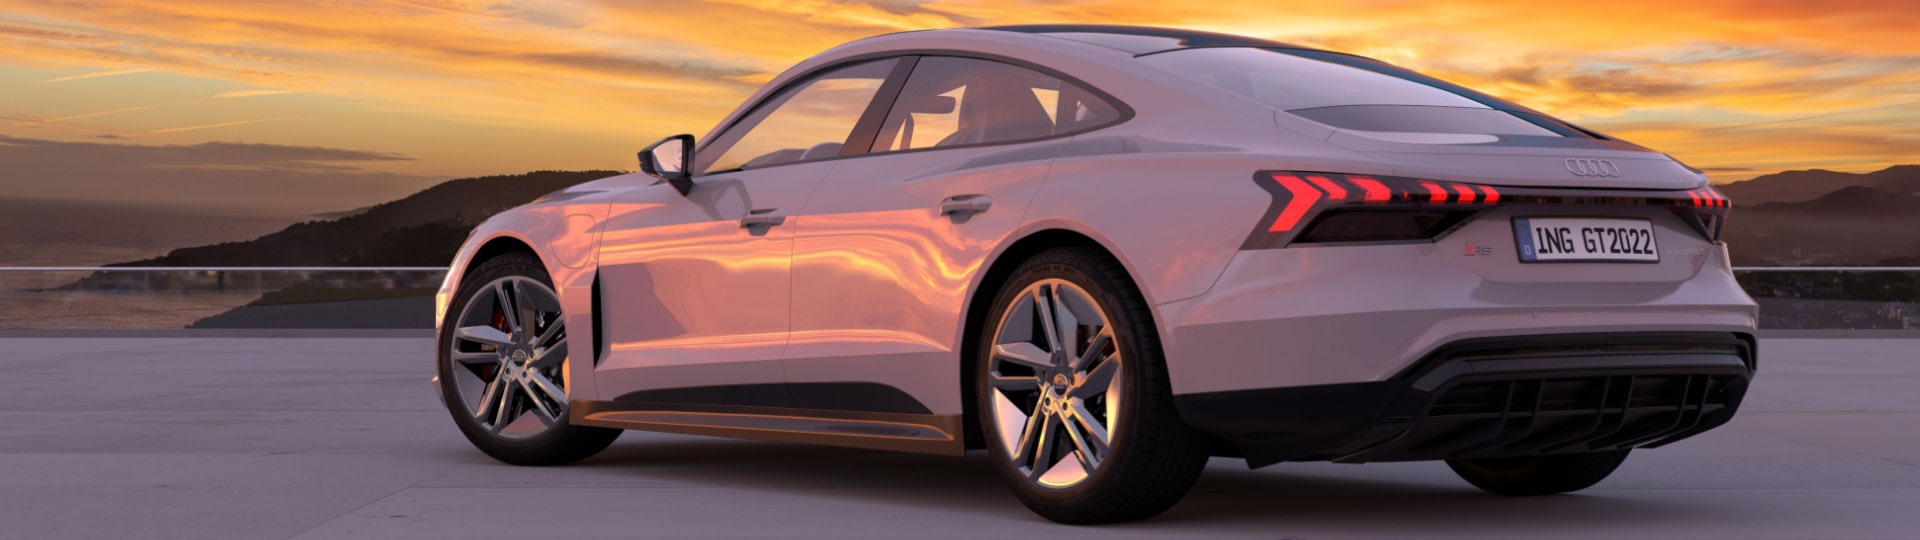 Audi zvažuje výstavbu továrny na výrobu elektromobilů v USA